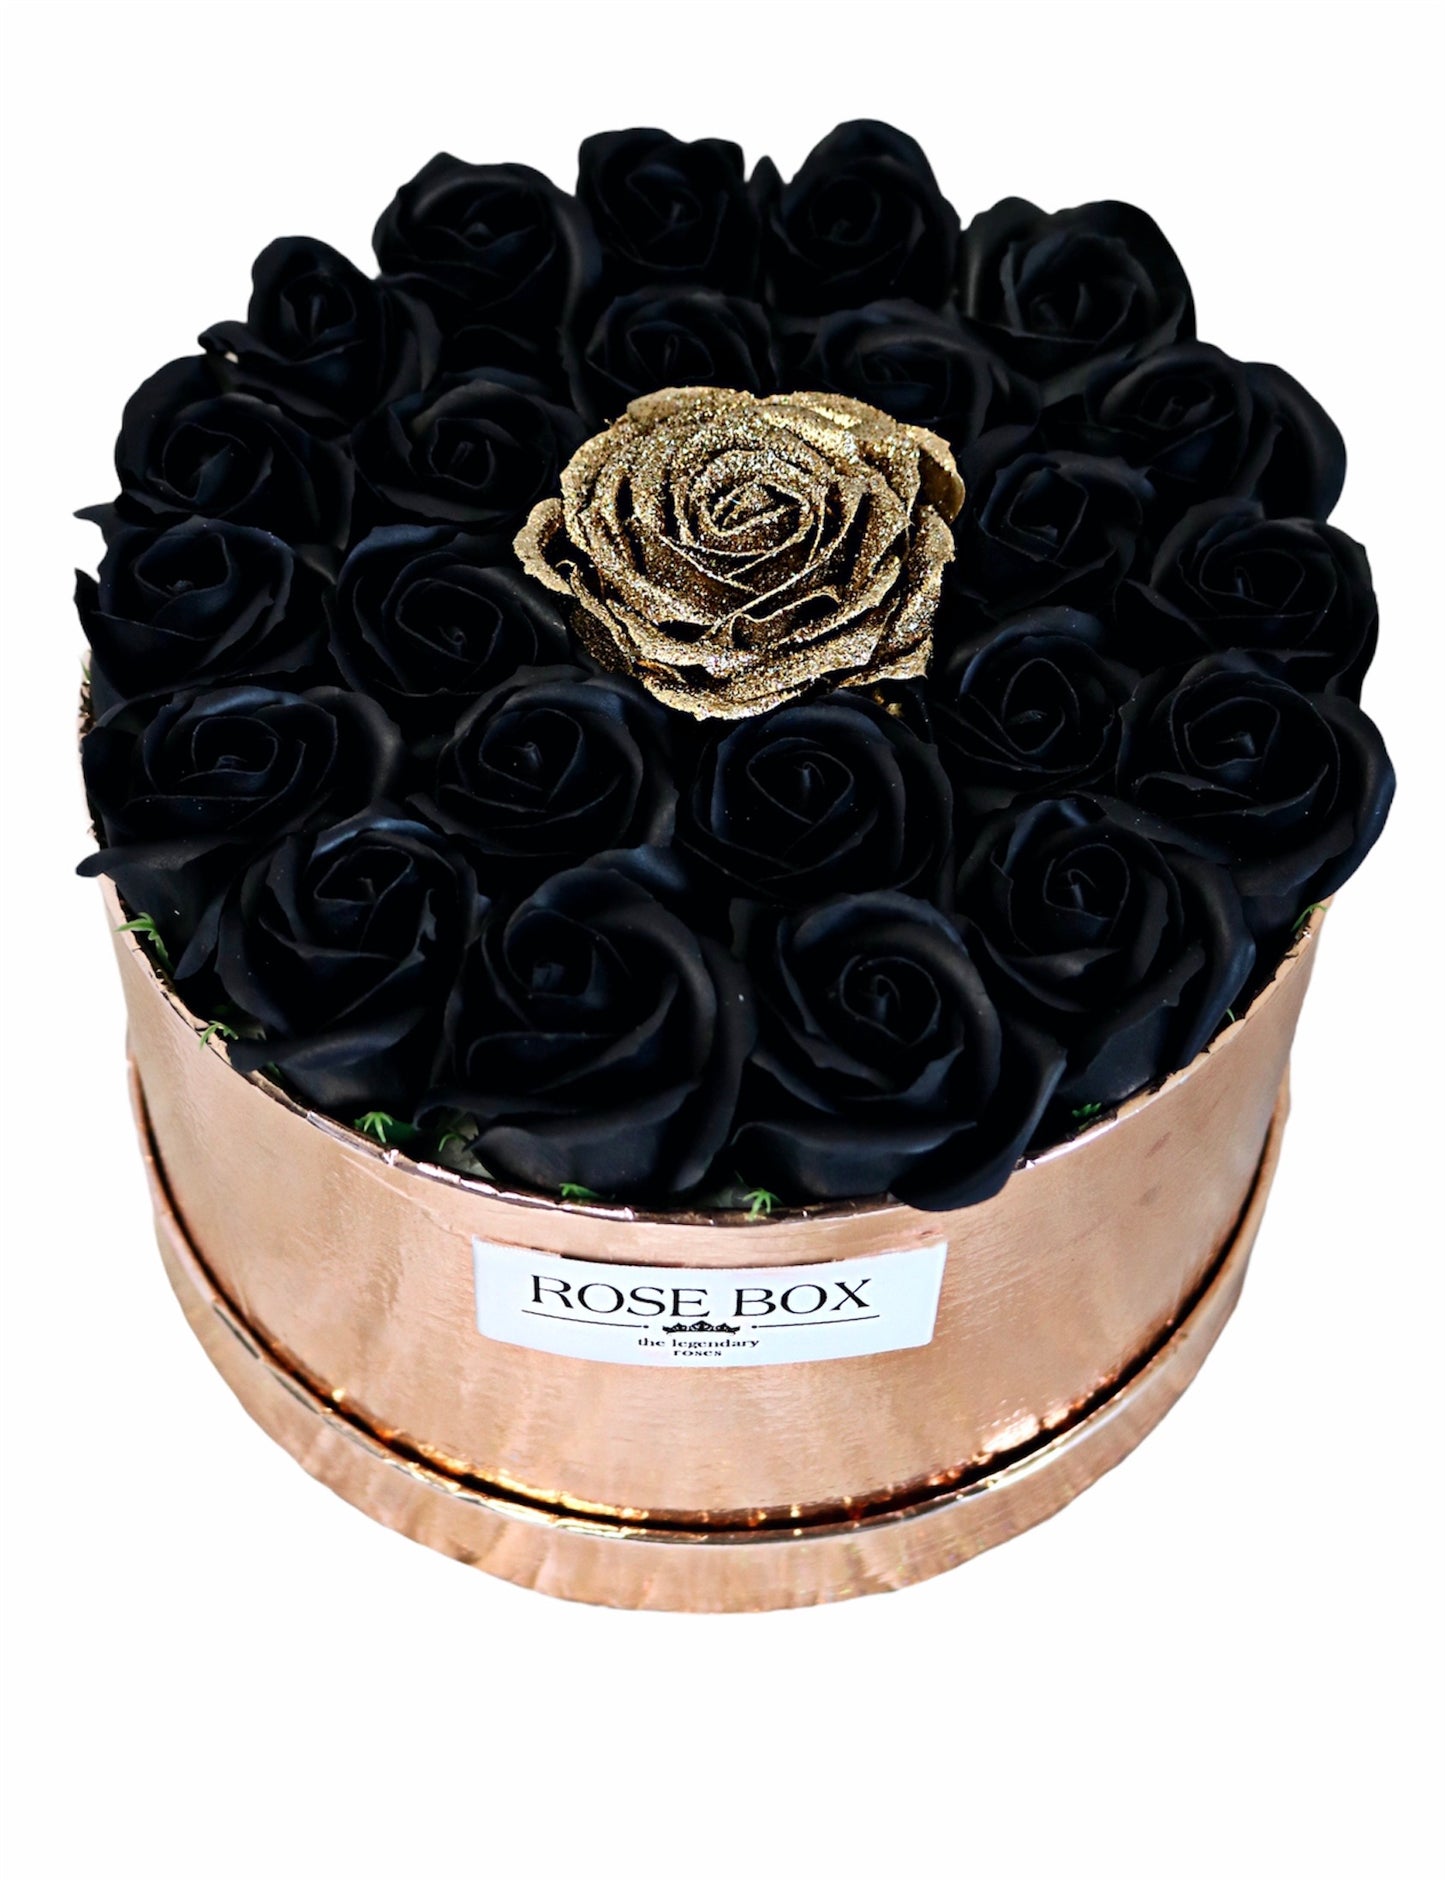 Cutie rose-gold cu 31 trandafiri negru&auriu